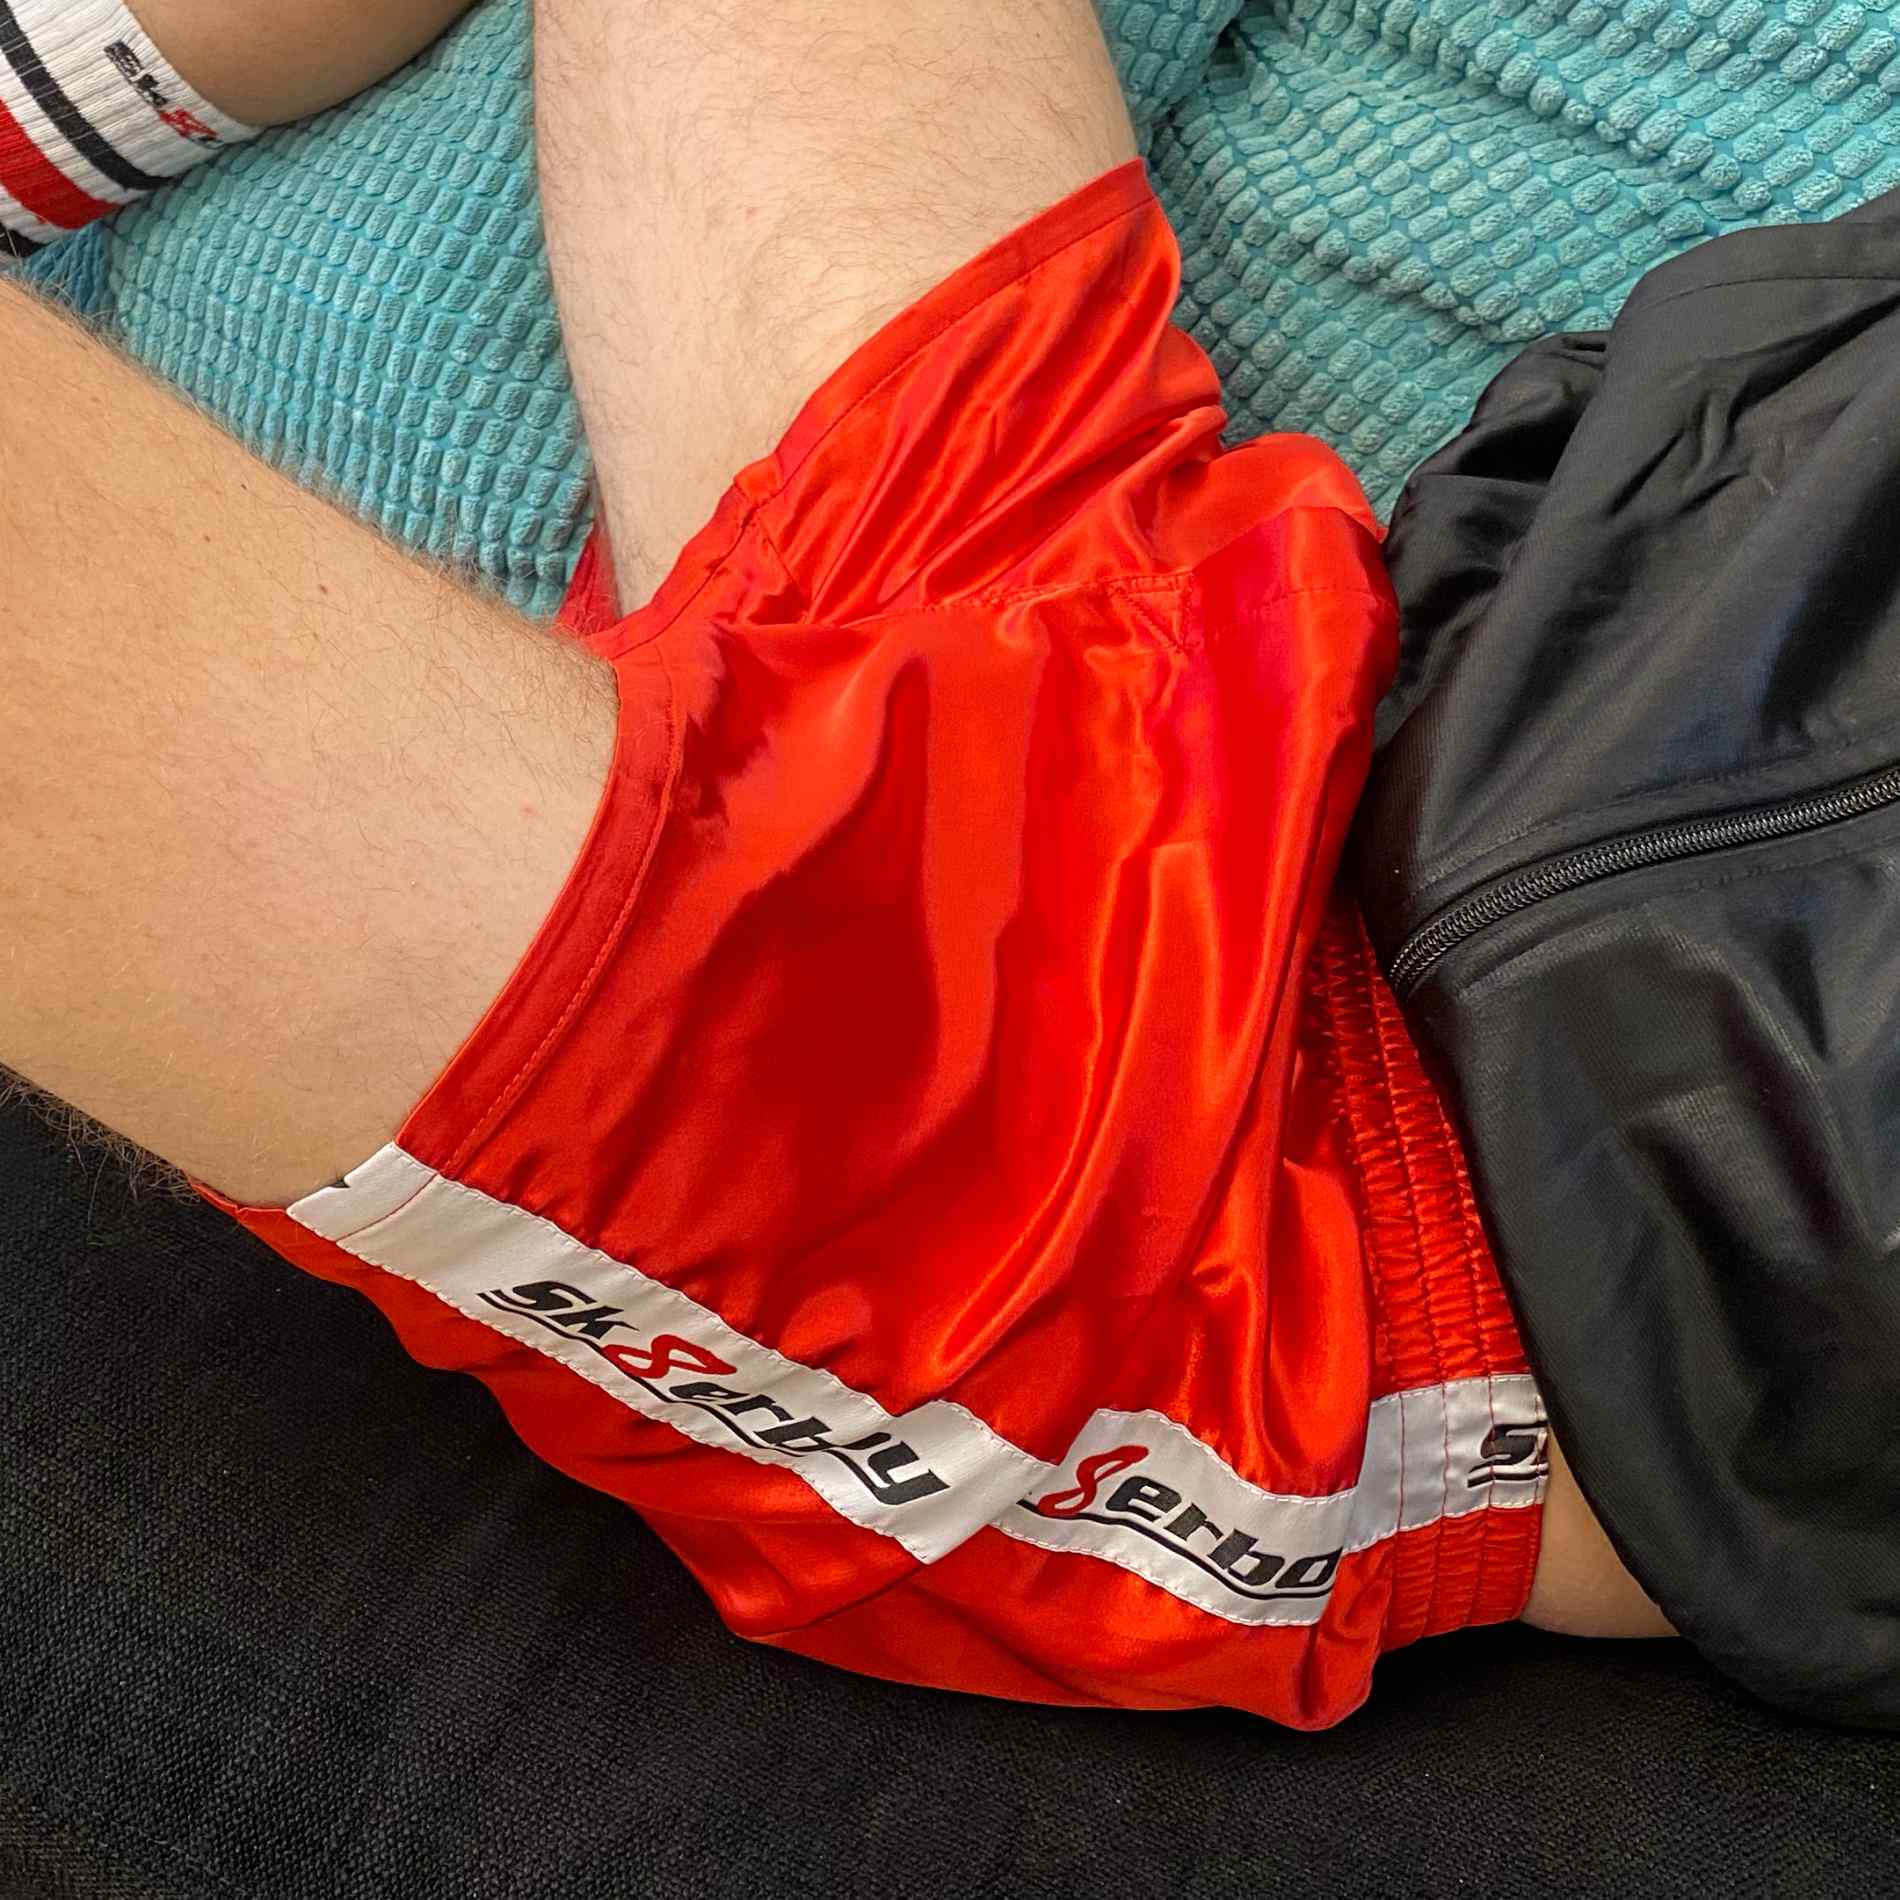 junge auf dem sofa traegt eine feuer rote glanz unterhose in shiny red von sk8erboy mit eingriff und logo seitlich dazu tube socks von sk8erboy und shiny jacket trainingsjacke